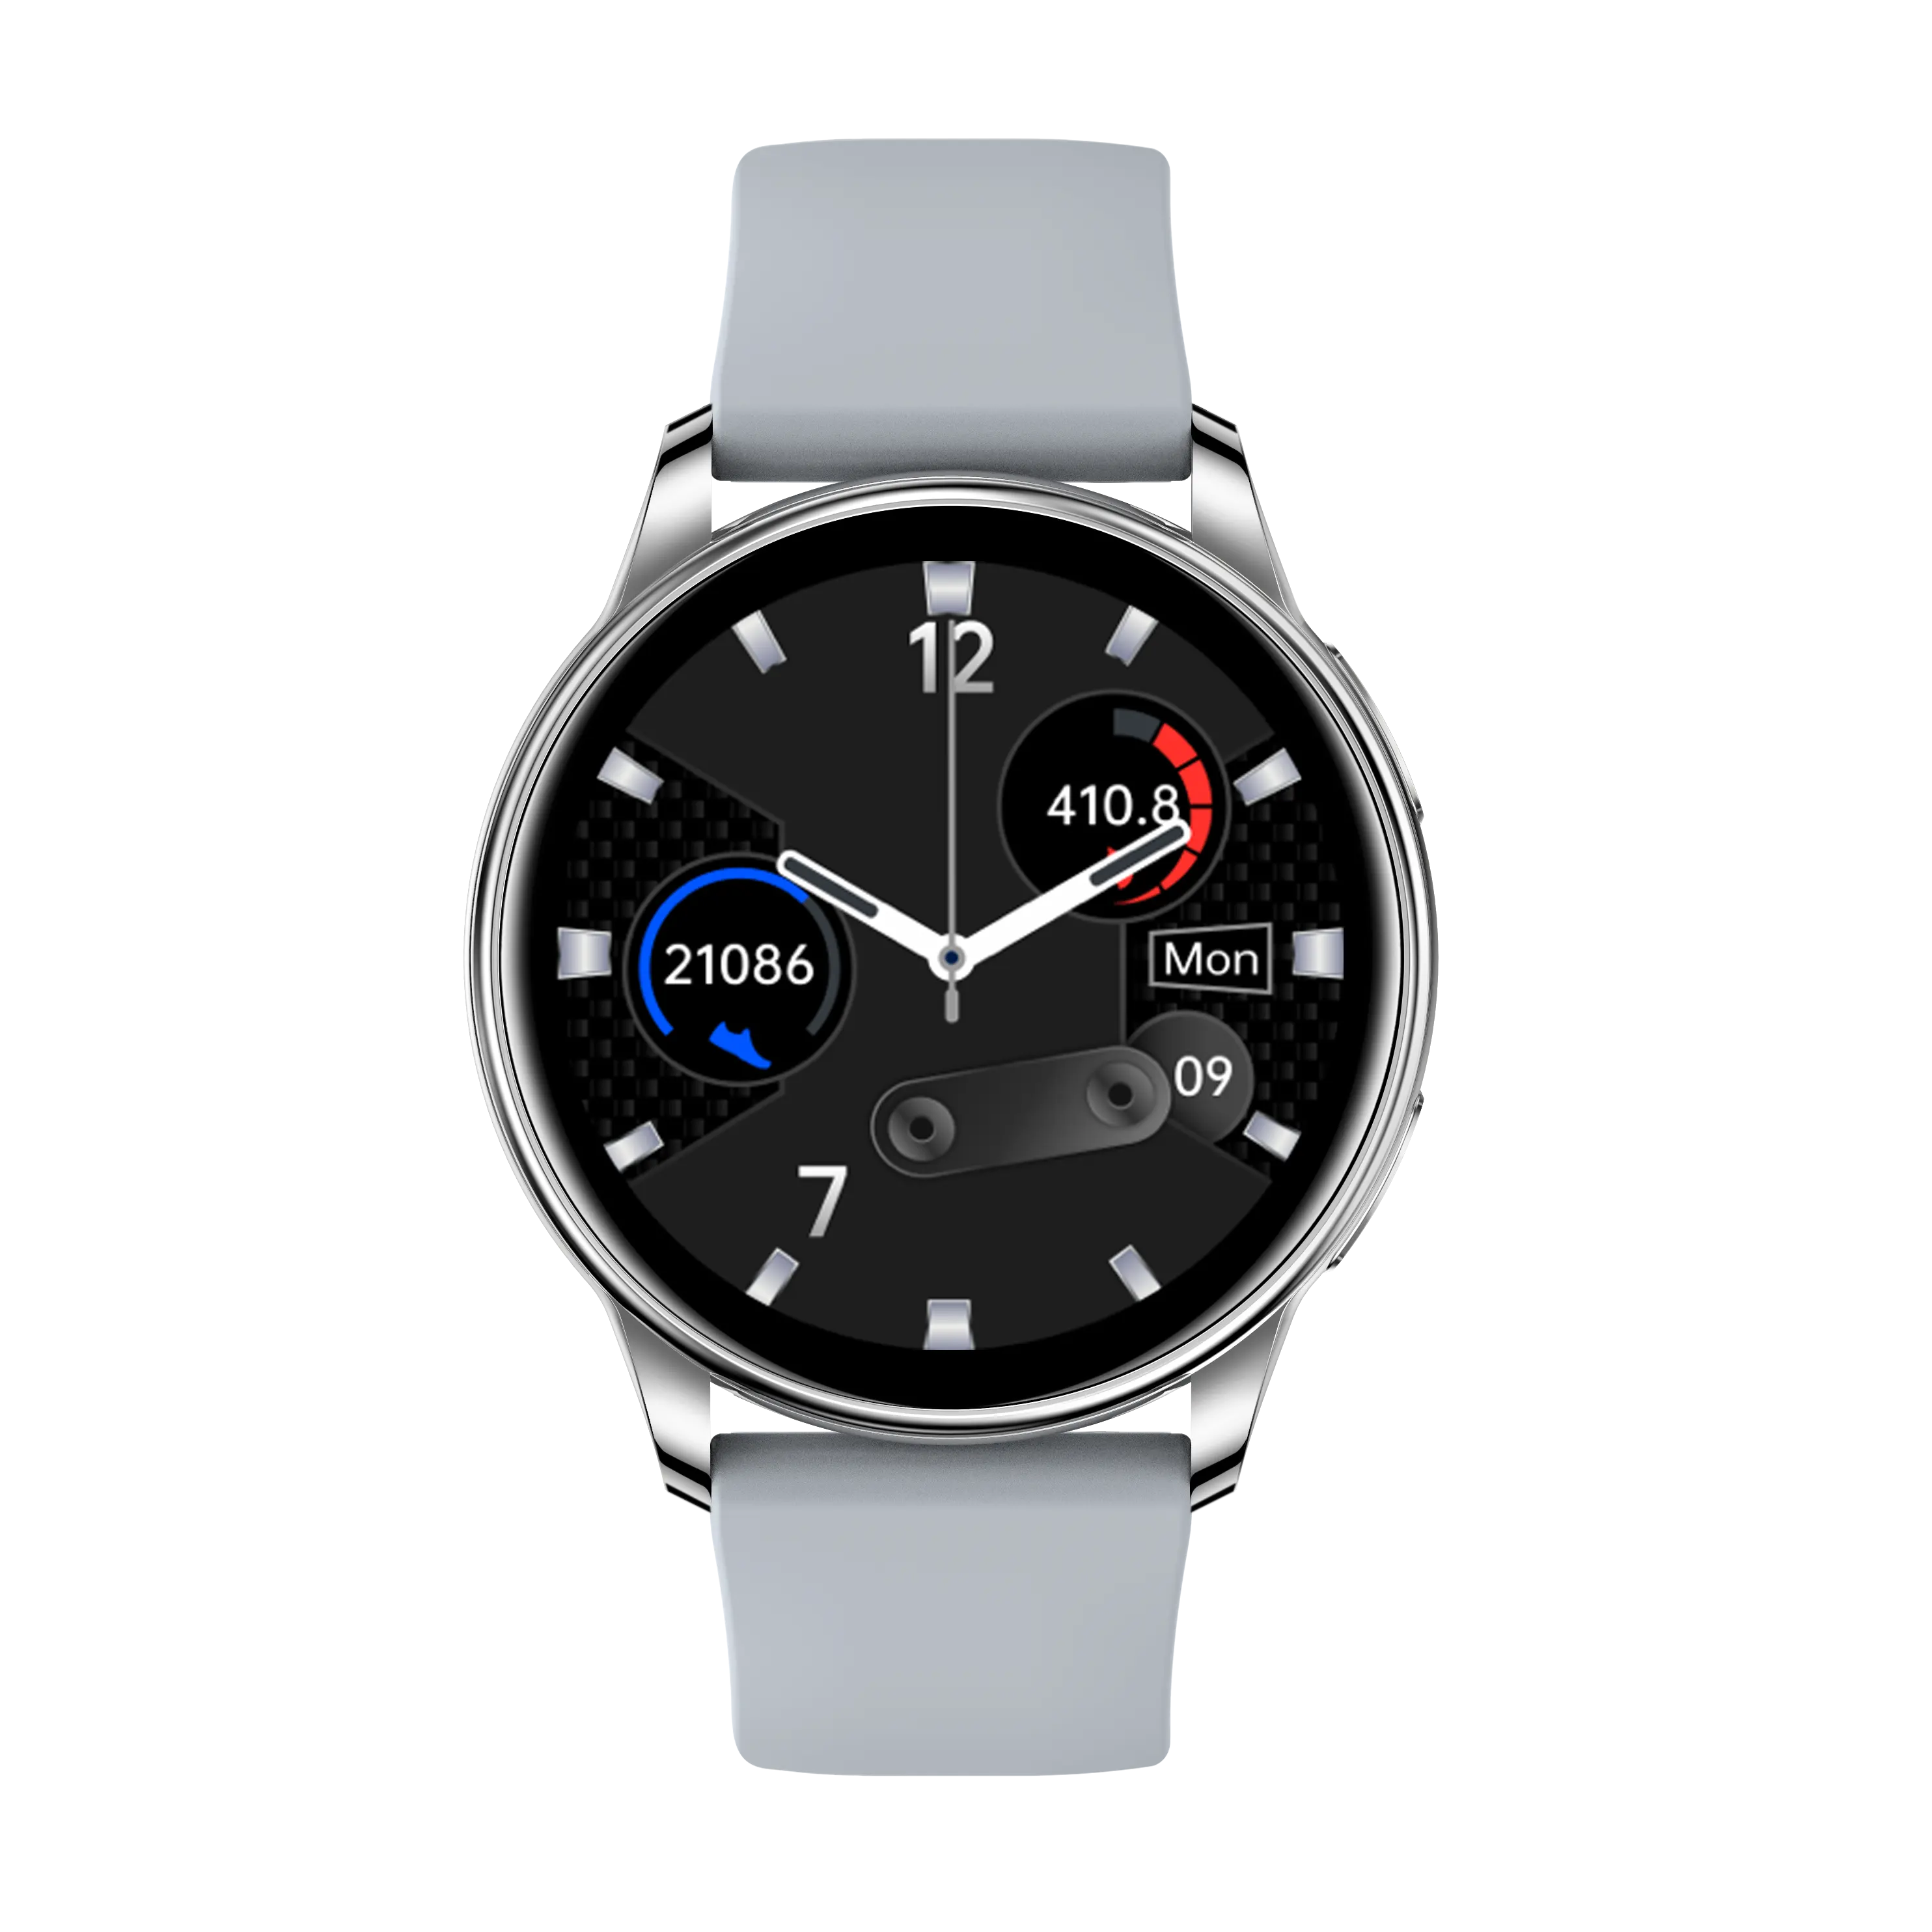 ทองสีดำสีเทาสี IP67กันน้ำ Y33นาฬิกาสมาร์ทนาฬิกาสุขภาพ